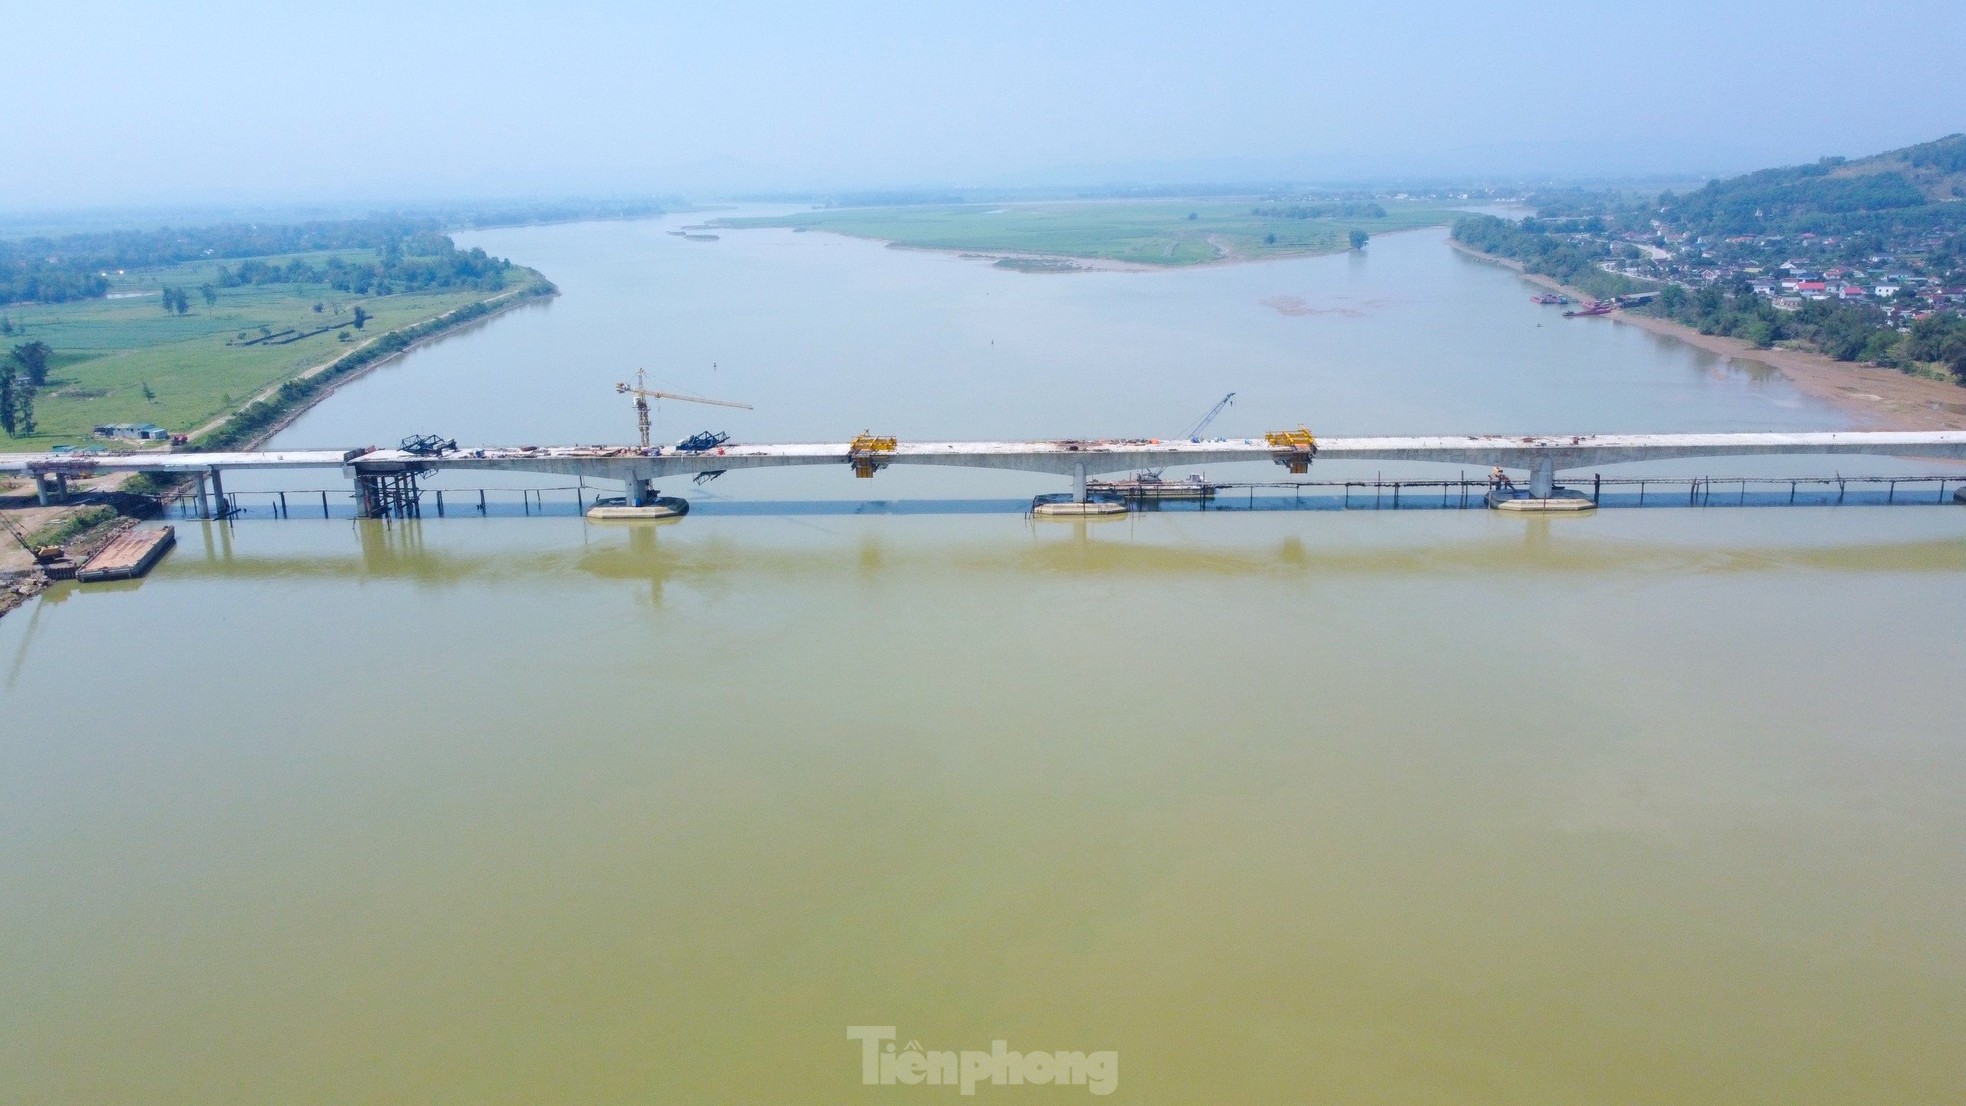 Cầu vượt sông nối 2 tỉnh Nghệ An và Hà Tĩnh trước ngày hợp long- Ảnh 3.